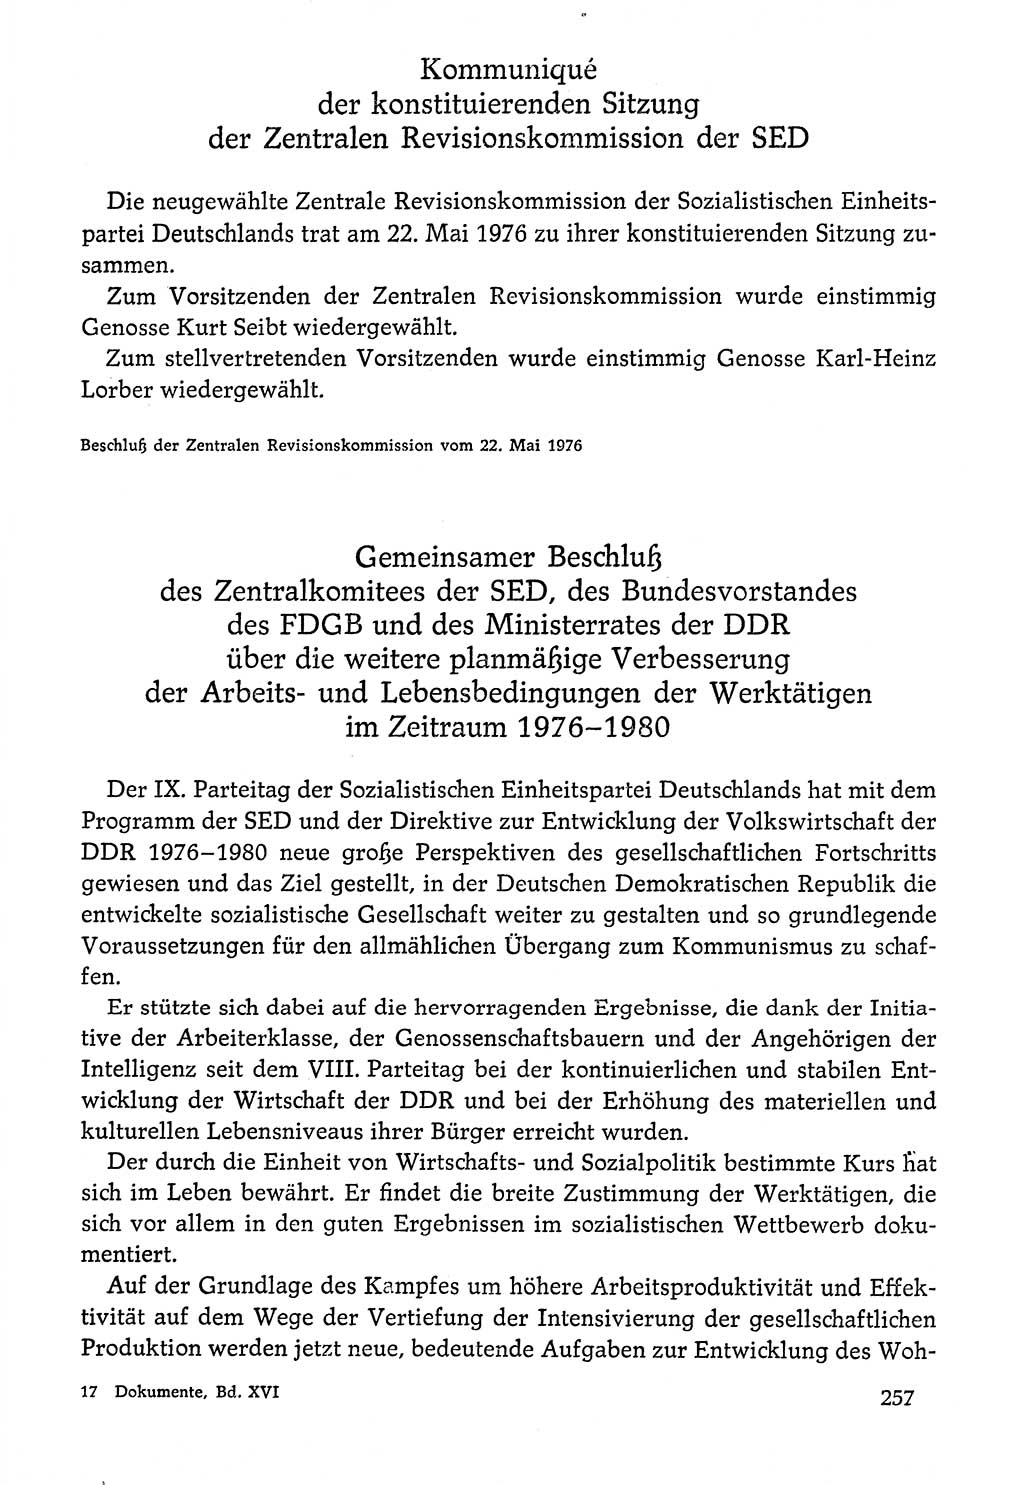 Dokumente der Sozialistischen Einheitspartei Deutschlands (SED) [Deutsche Demokratische Republik (DDR)] 1976-1977, Seite 257 (Dok. SED DDR 1976-1977, S. 257)